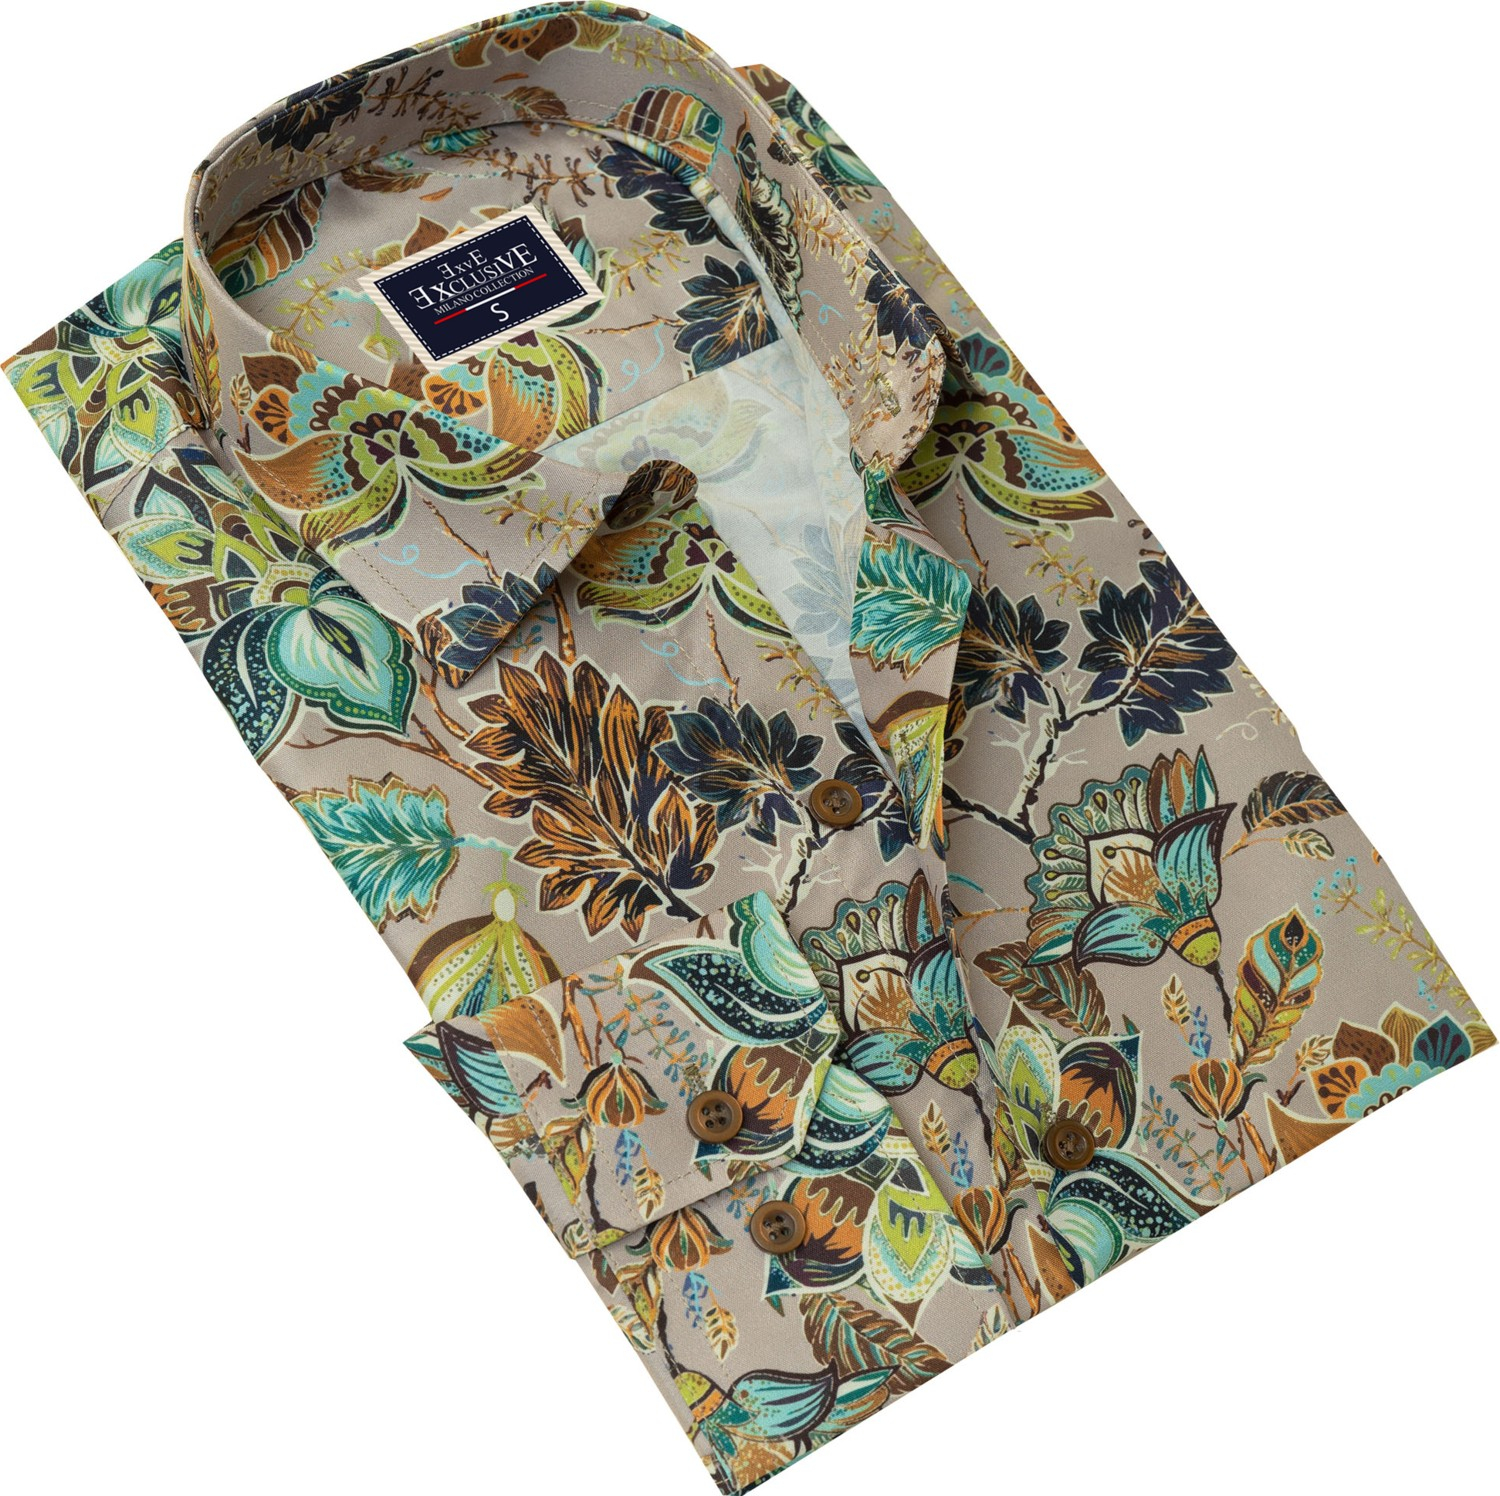 Эксклюзивная рубашка Exve с узором пейсли бежевого цвета, выполненная в цифровой печати из полиэстера Pes.